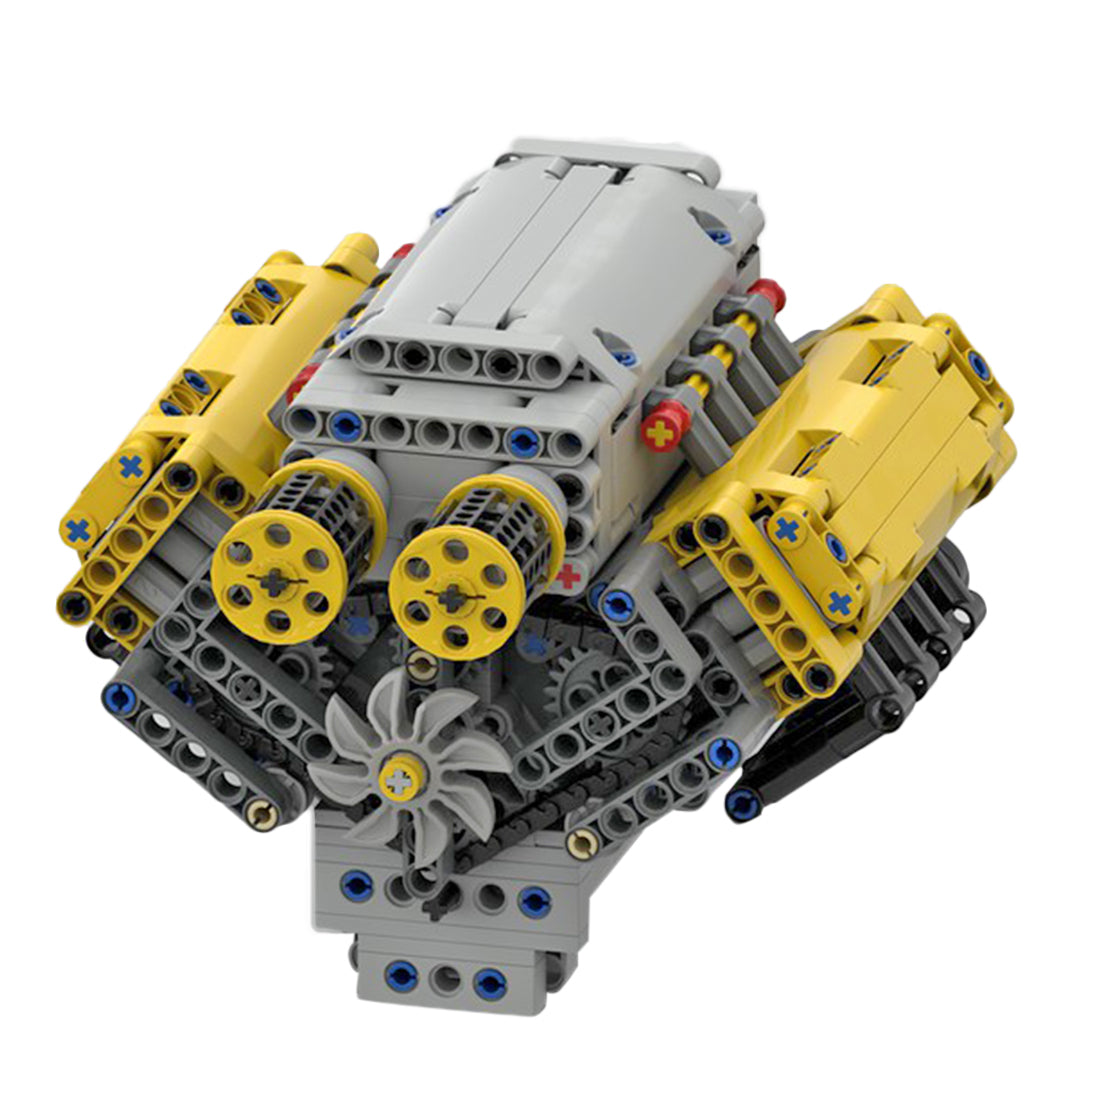 MOC-54607 Crossplane V8 Engine Bricks - Build Your Own V8 Engine